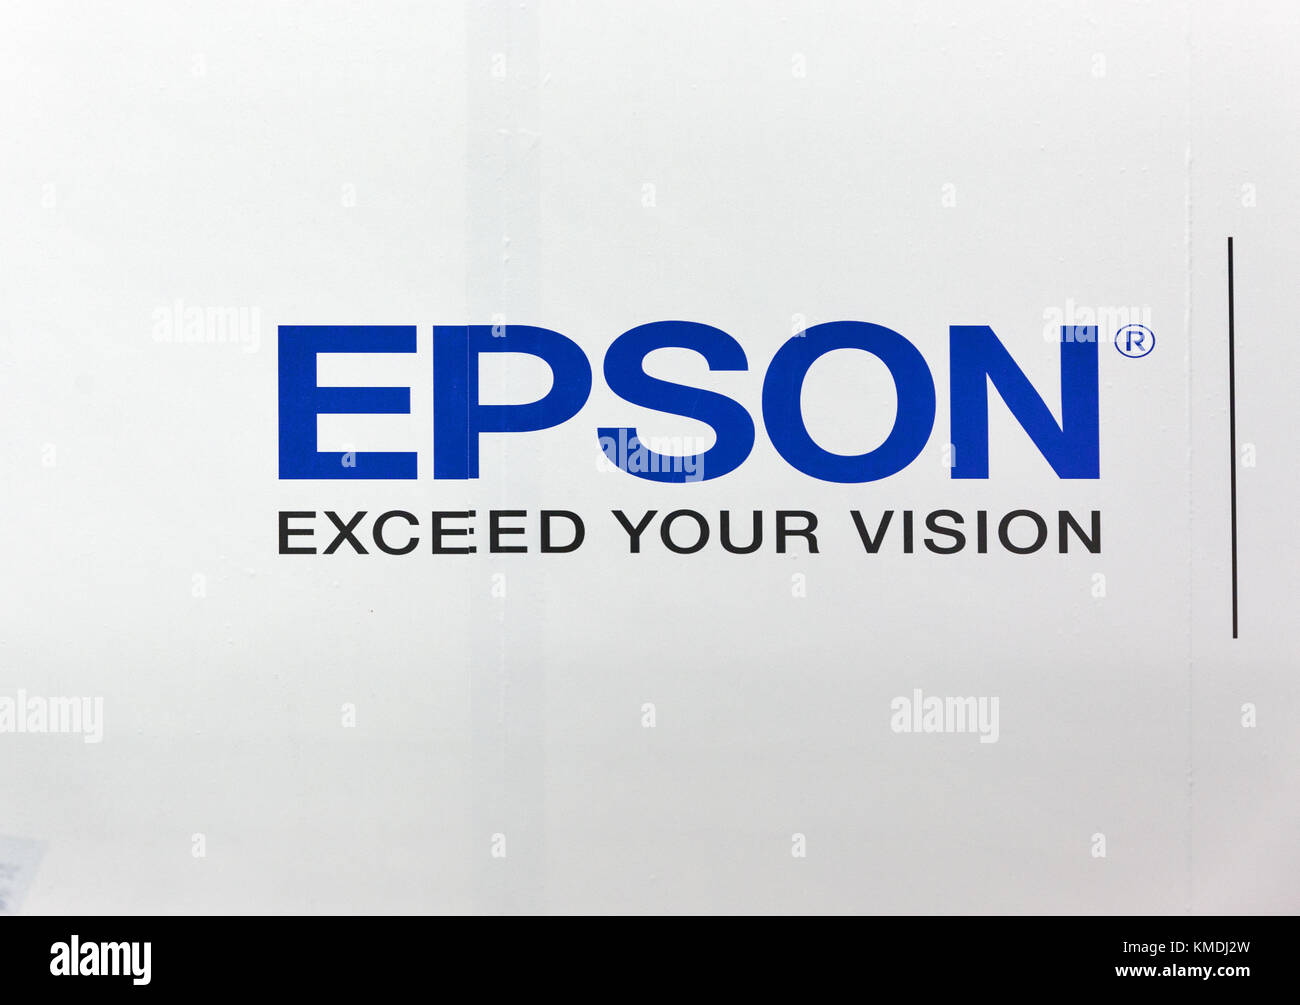 Kiew, Ukraine - Oktober 07, 2017: Epson-Logo, japanische Unternehmen, einer  der weltweit größten Hersteller von Computer Drucker stand bei Cee 2017  Stockfotografie - Alamy